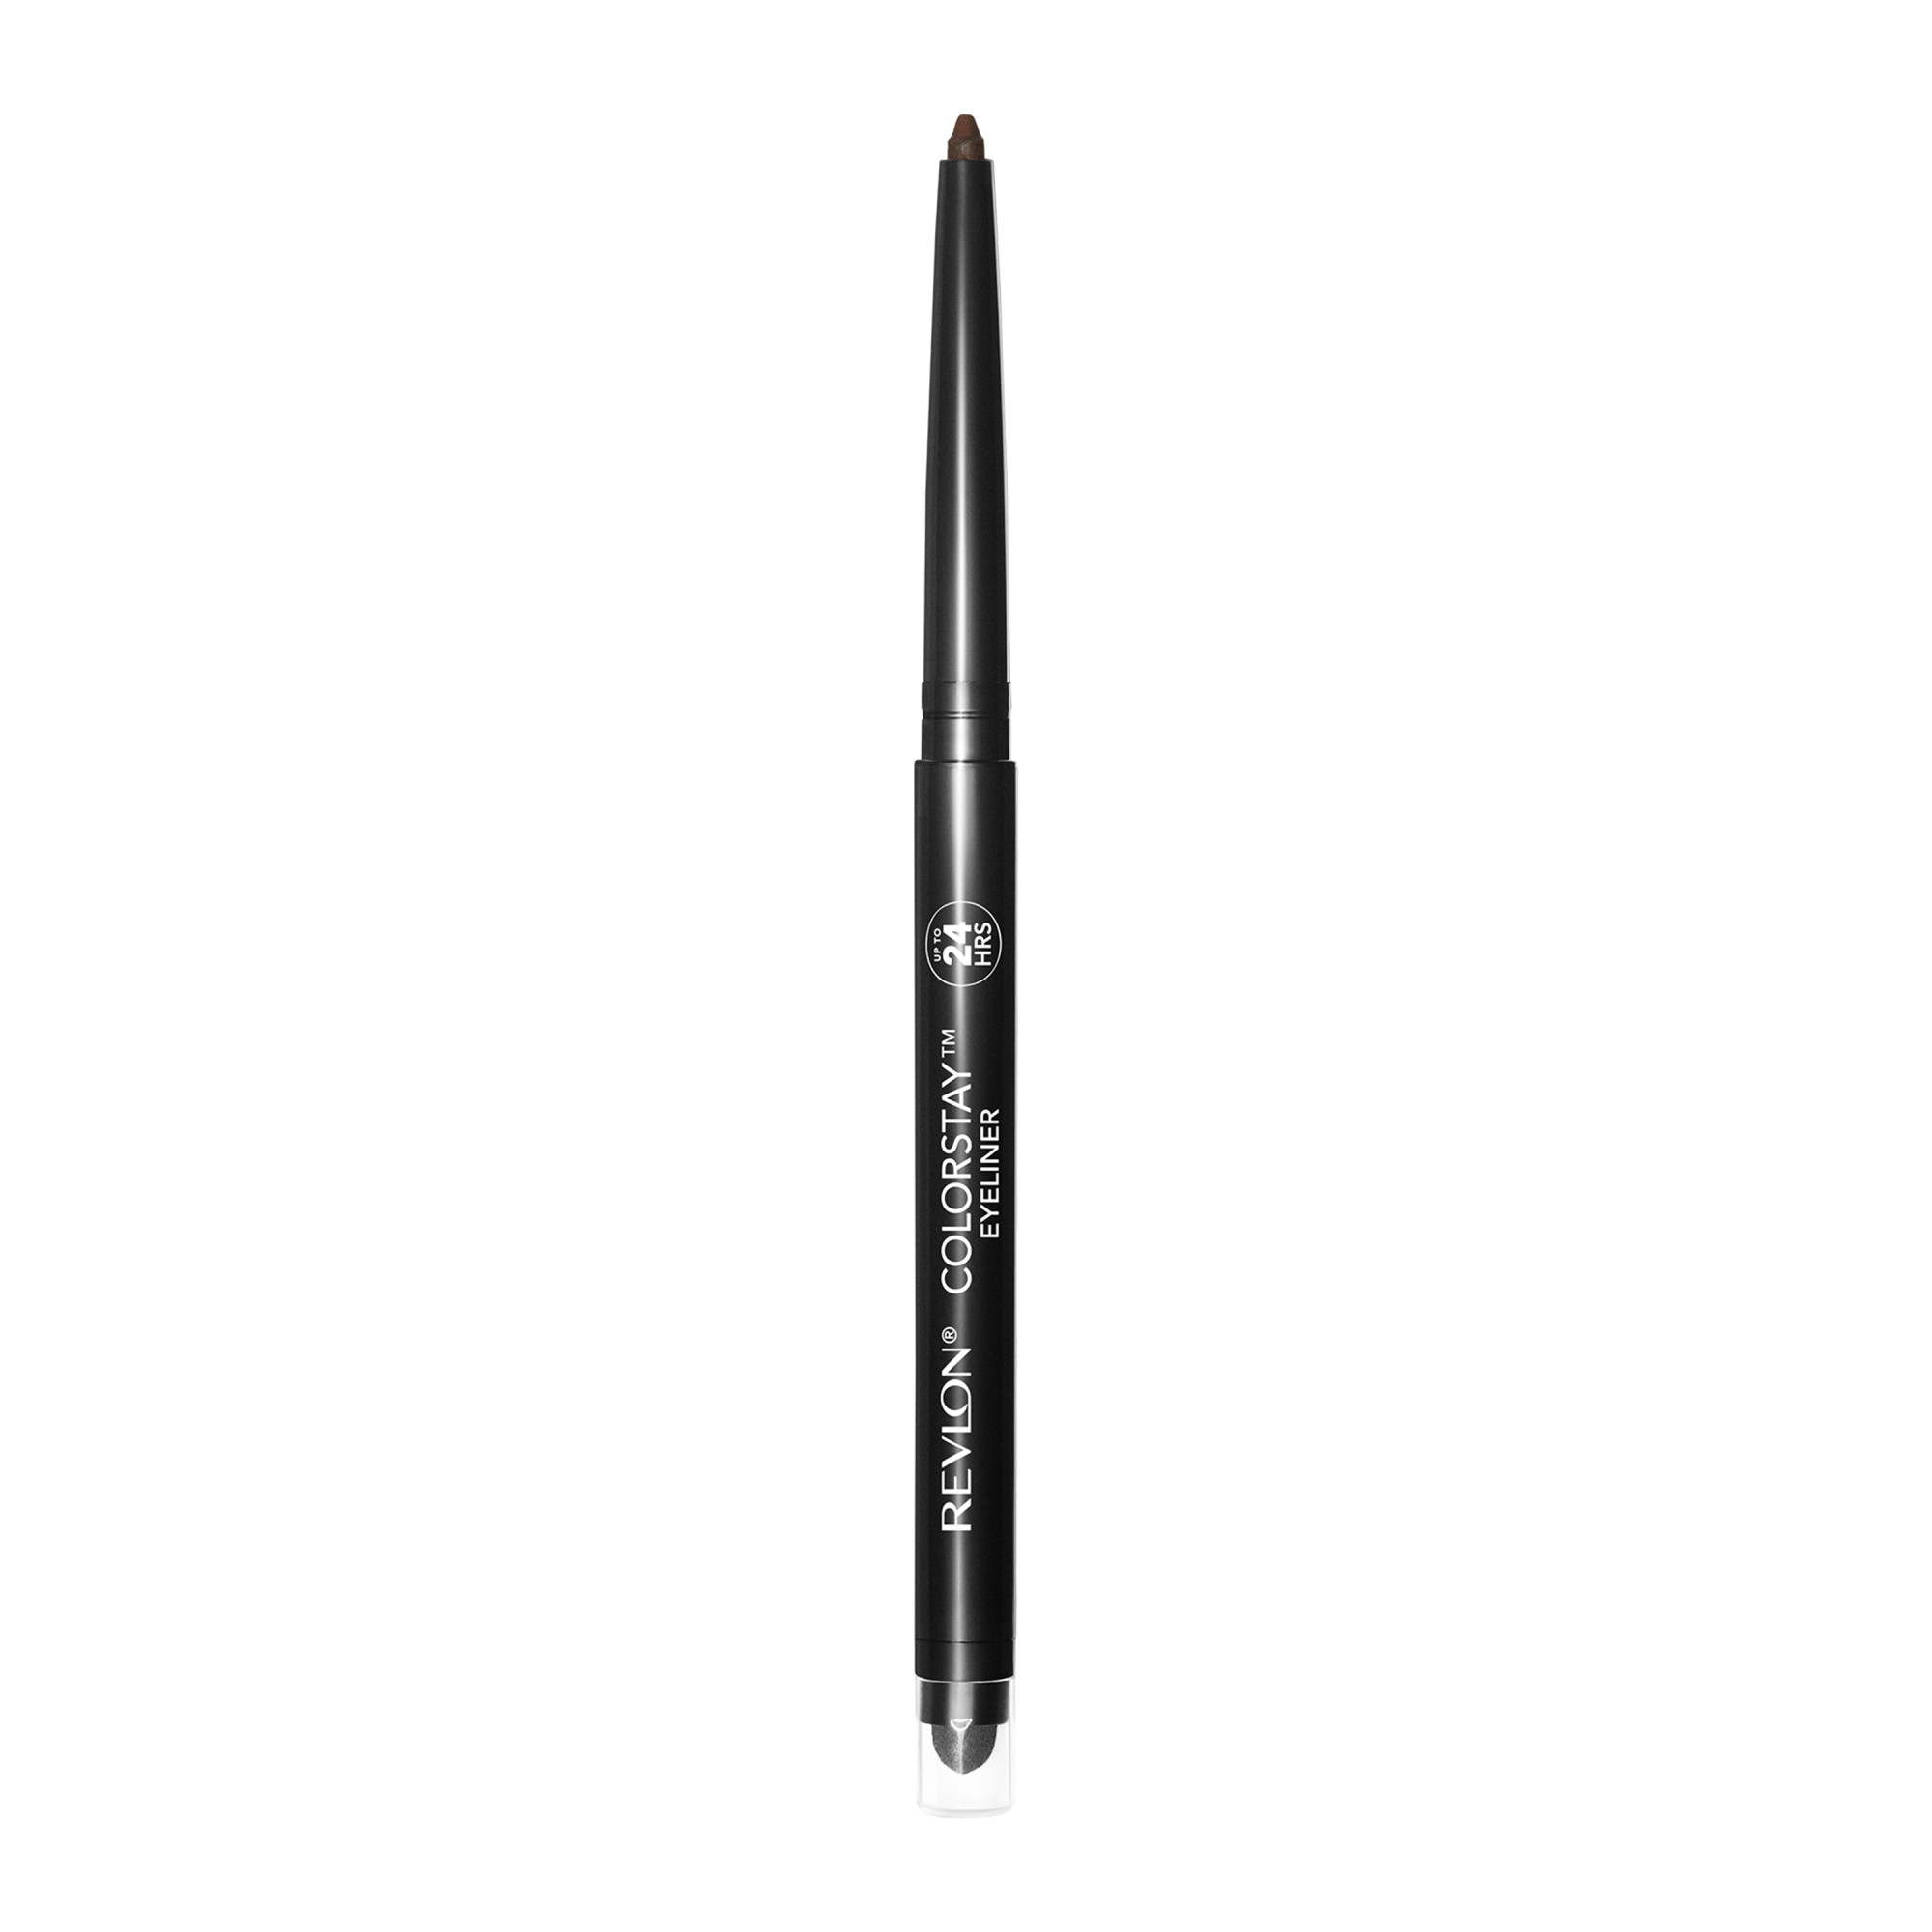 Revlon ColorStay Waterproof Eyeliner Pencil, 24HR Wear, Built-in Sharpener, 203 Brown, 0.01 oz - image 3 of 8